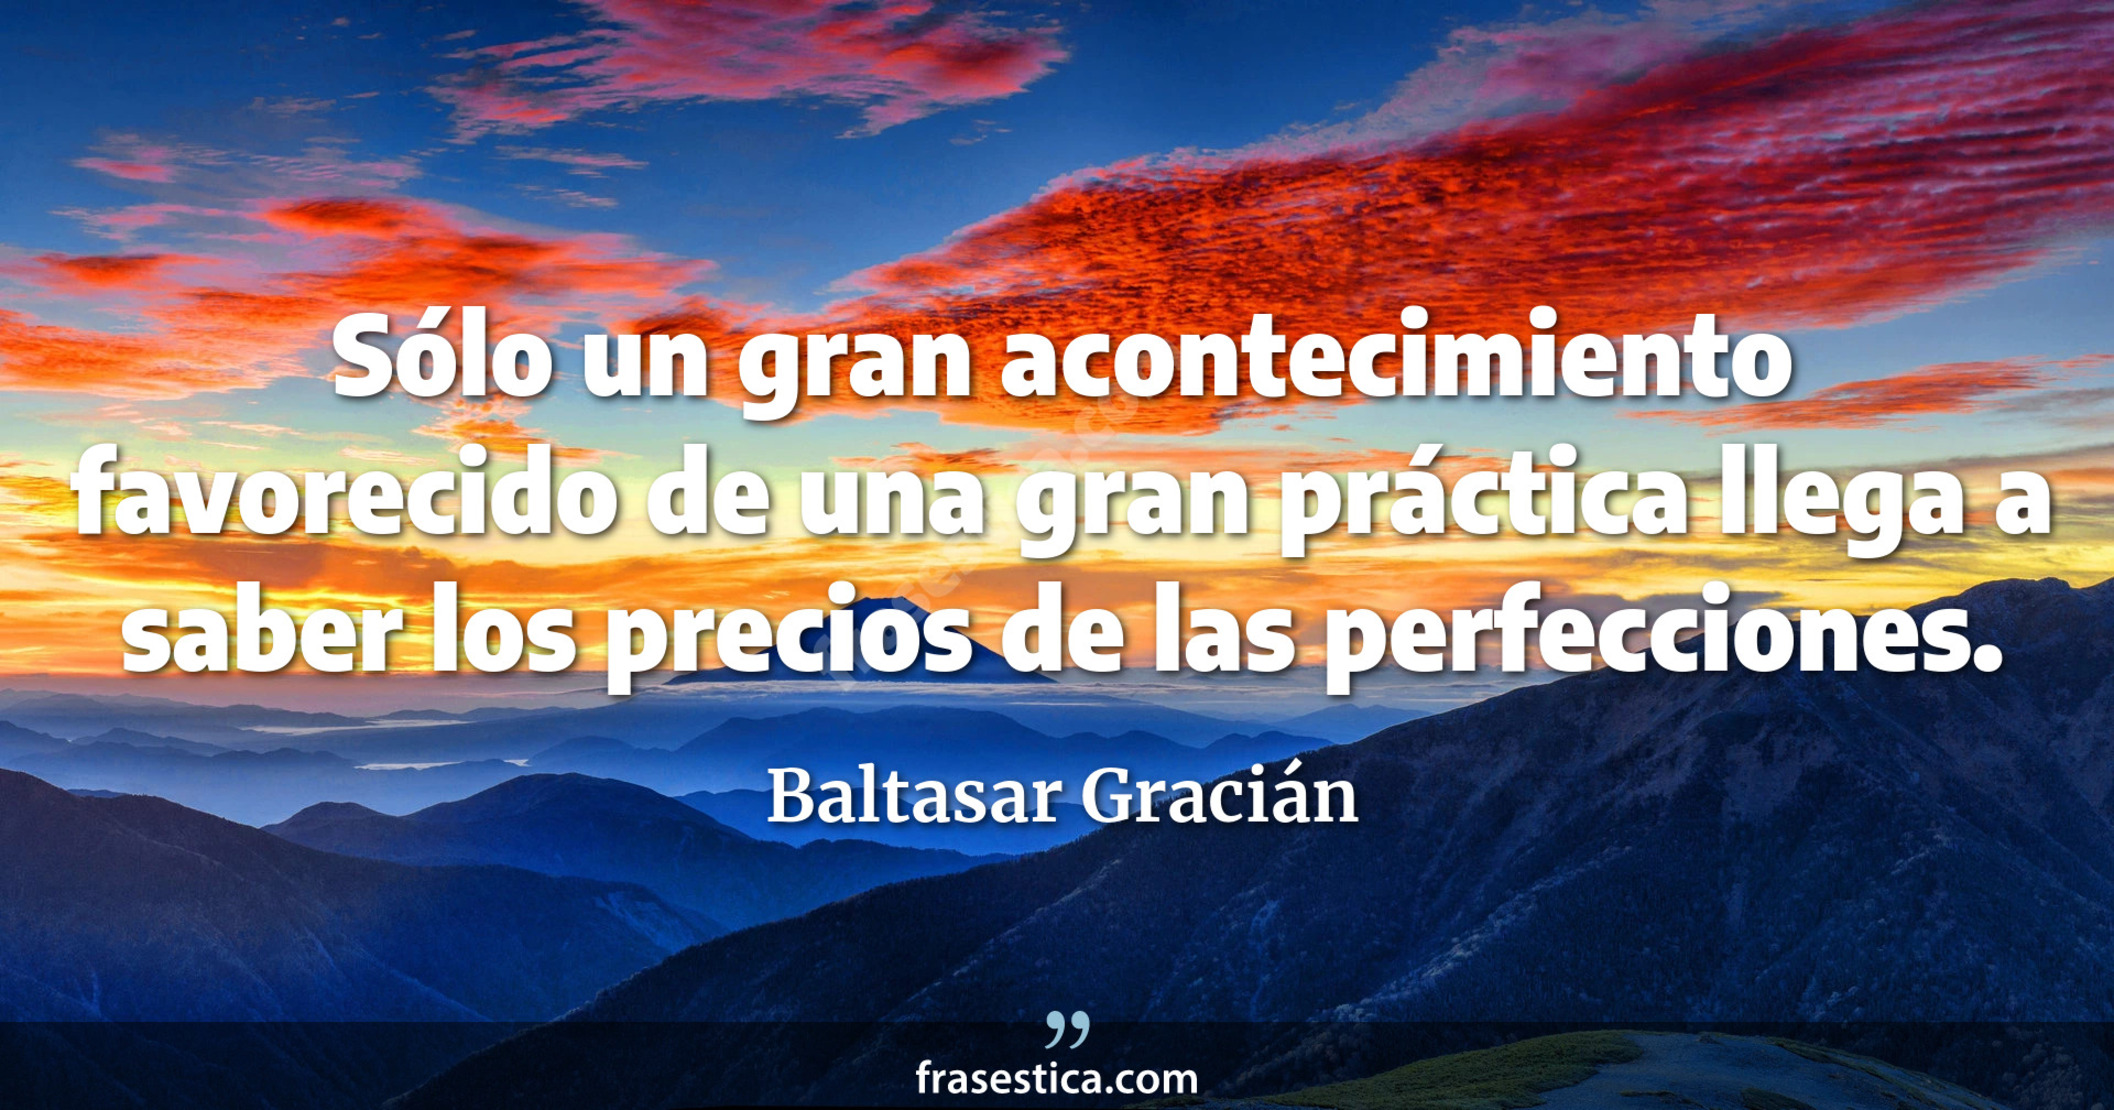 Sólo un gran acontecimiento favorecido de una gran práctica llega a saber los precios de las perfecciones. - Baltasar Gracián